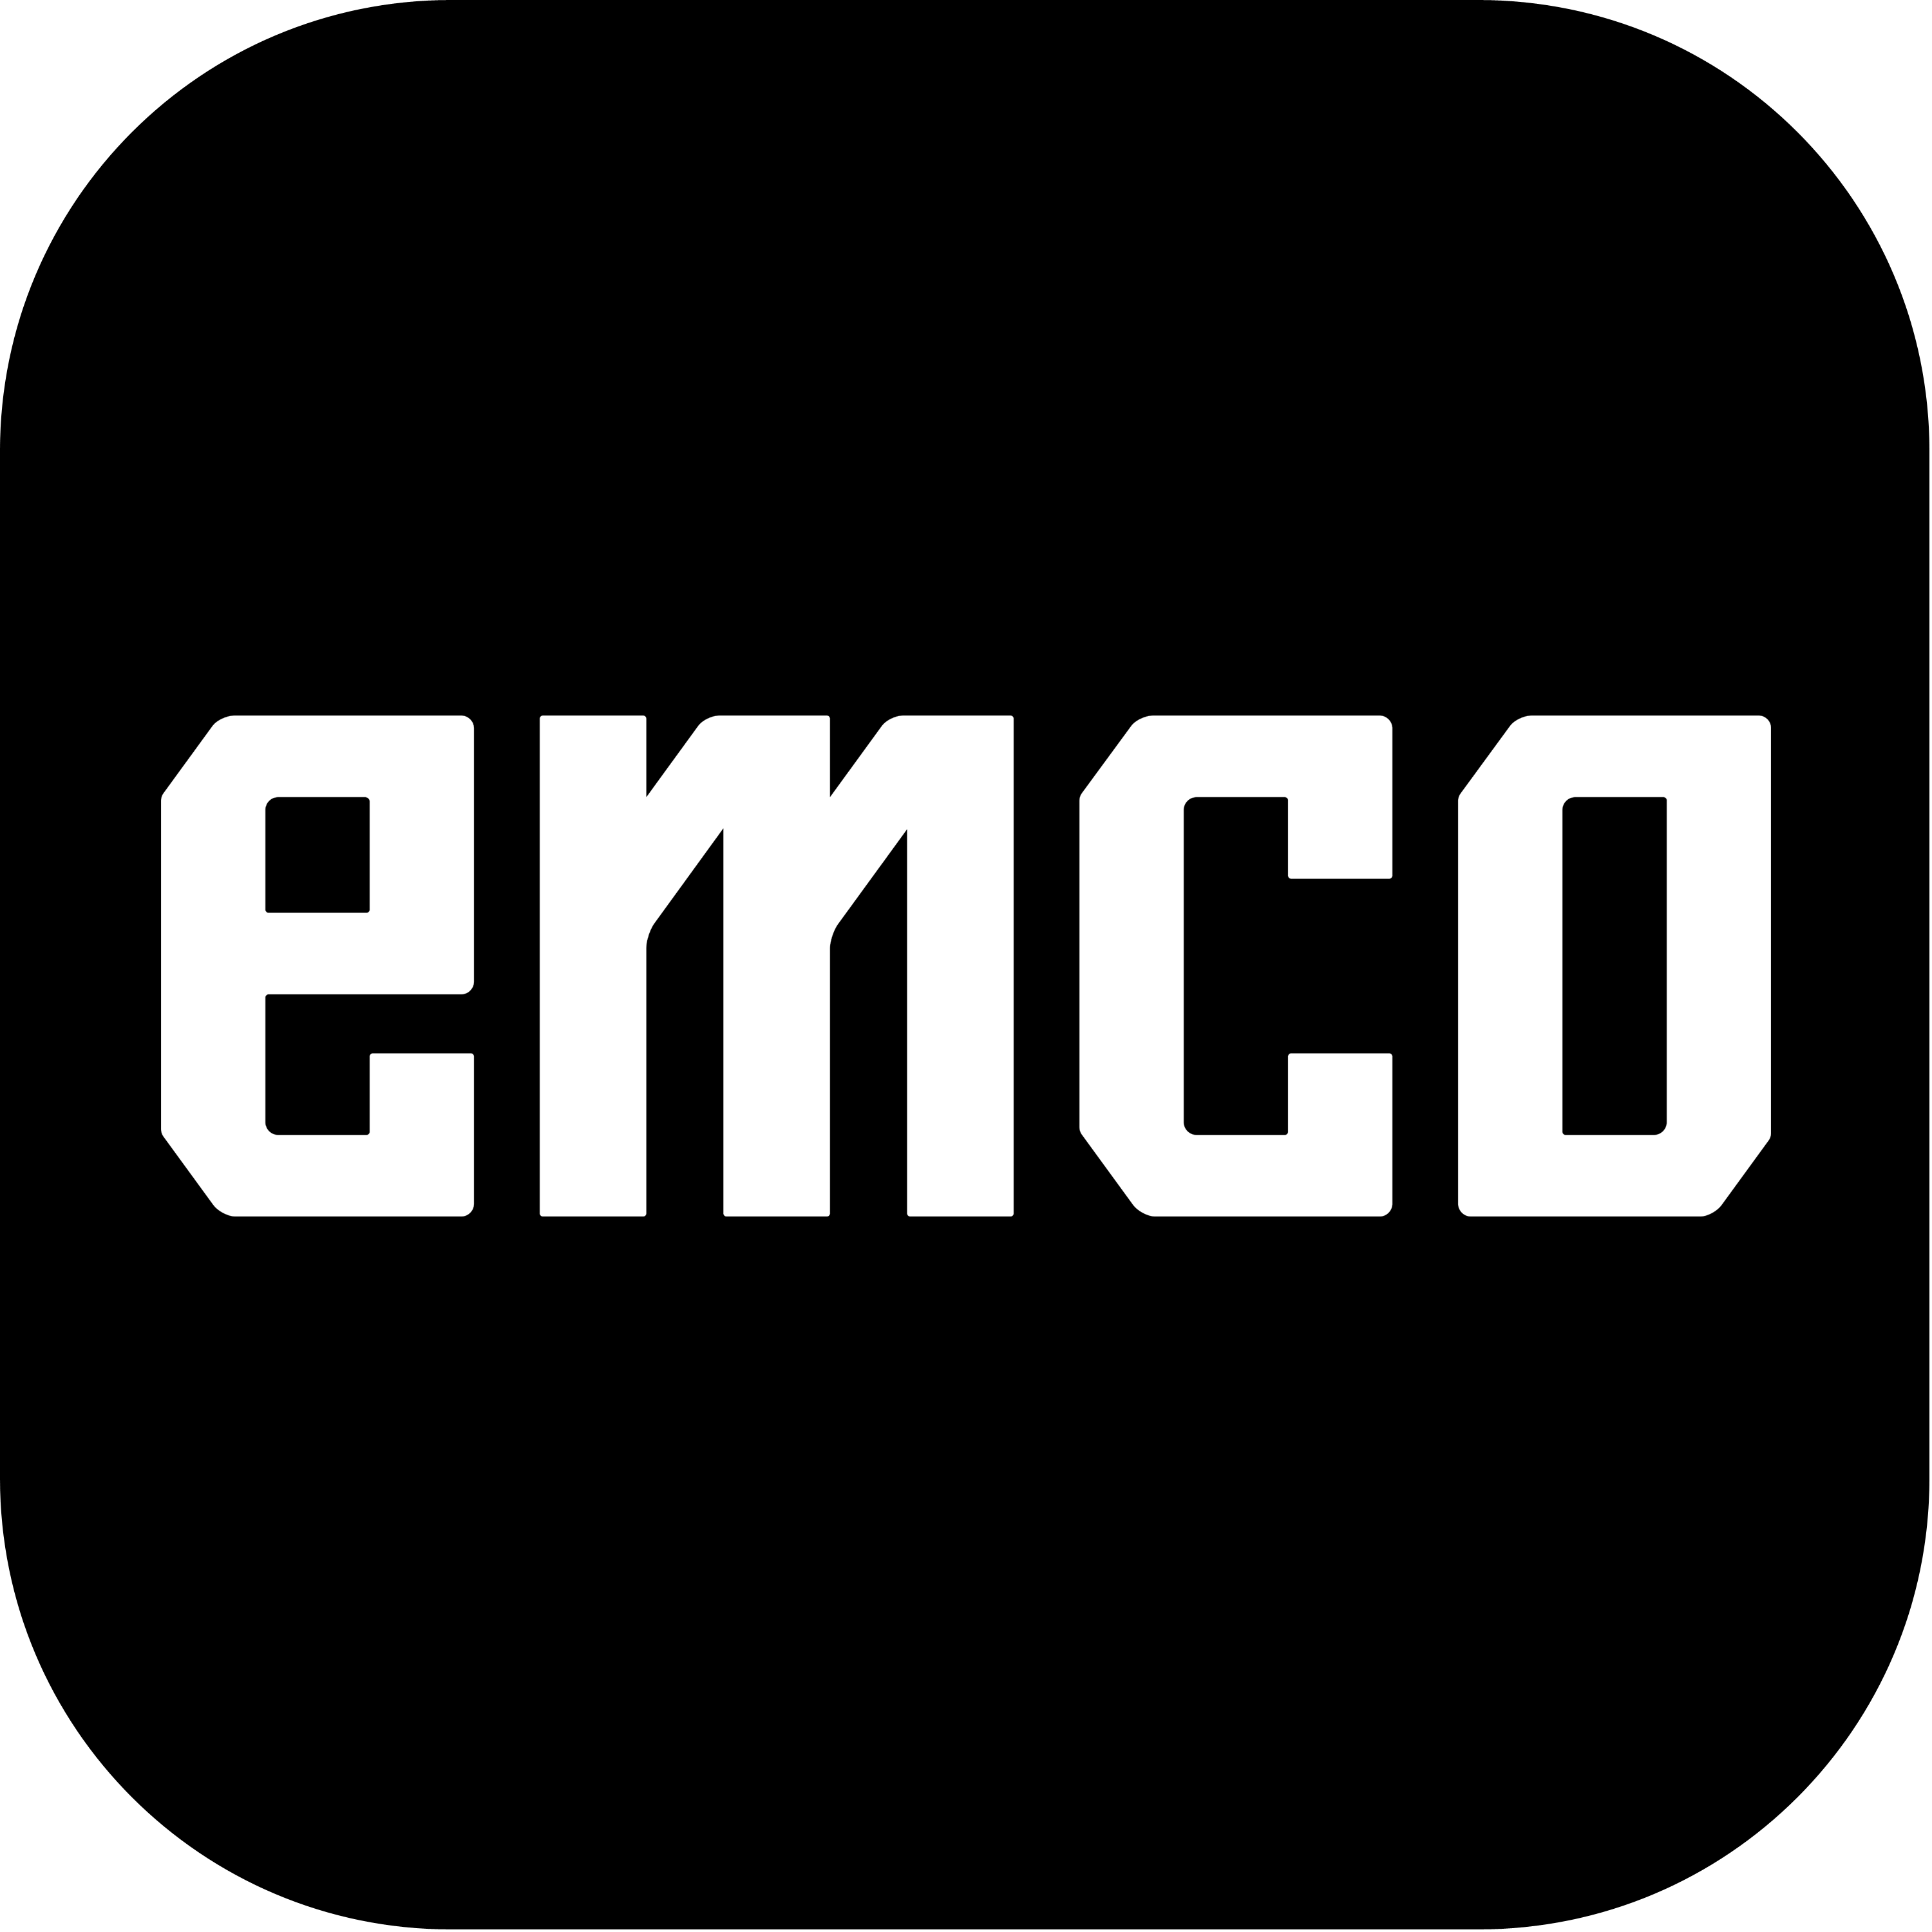 Emco Logo Transparent Picture